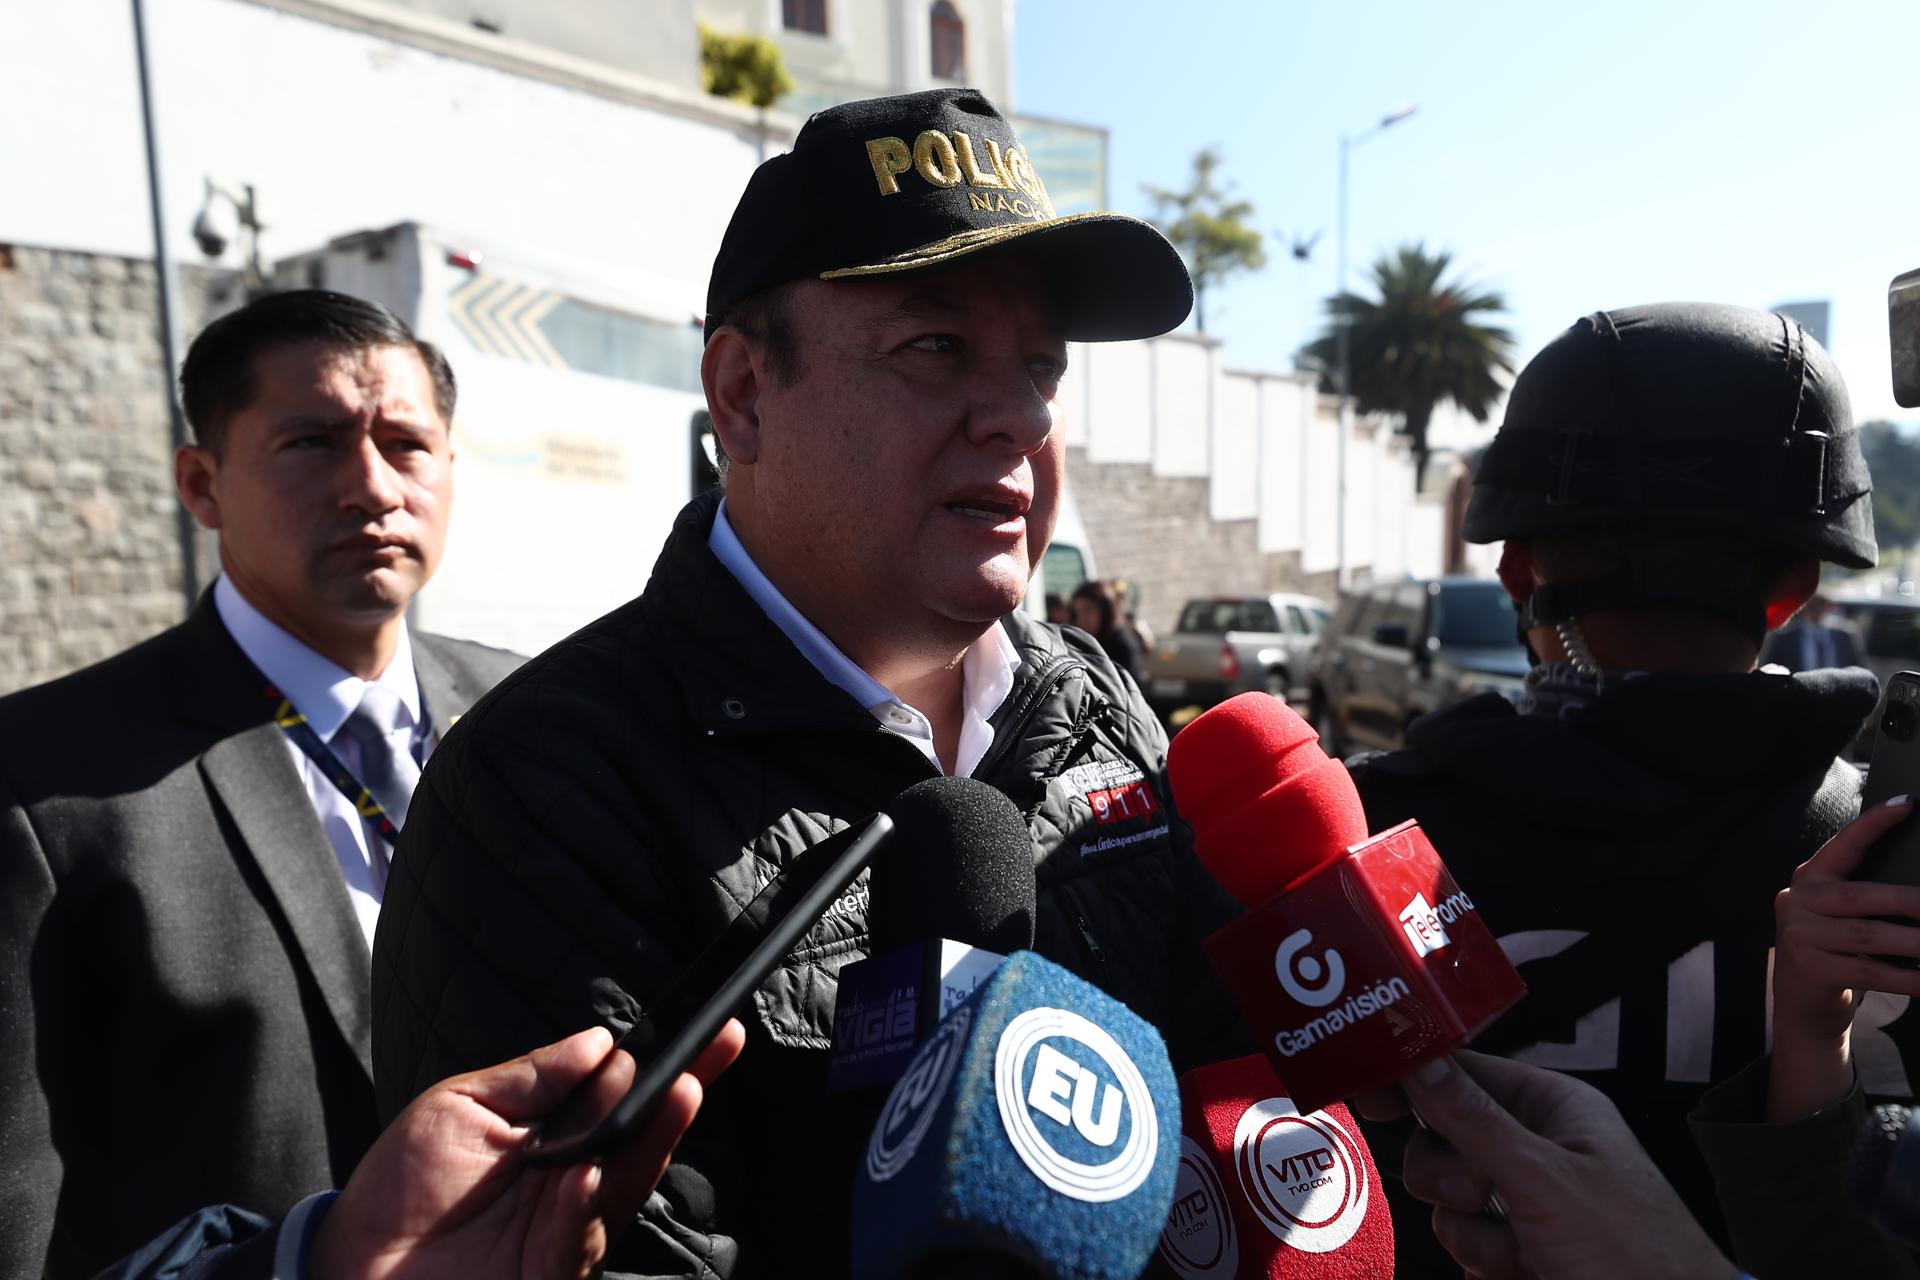 Ministro dice que la Policía solo actuará si hay amenaza al orden constituido en Ecuador